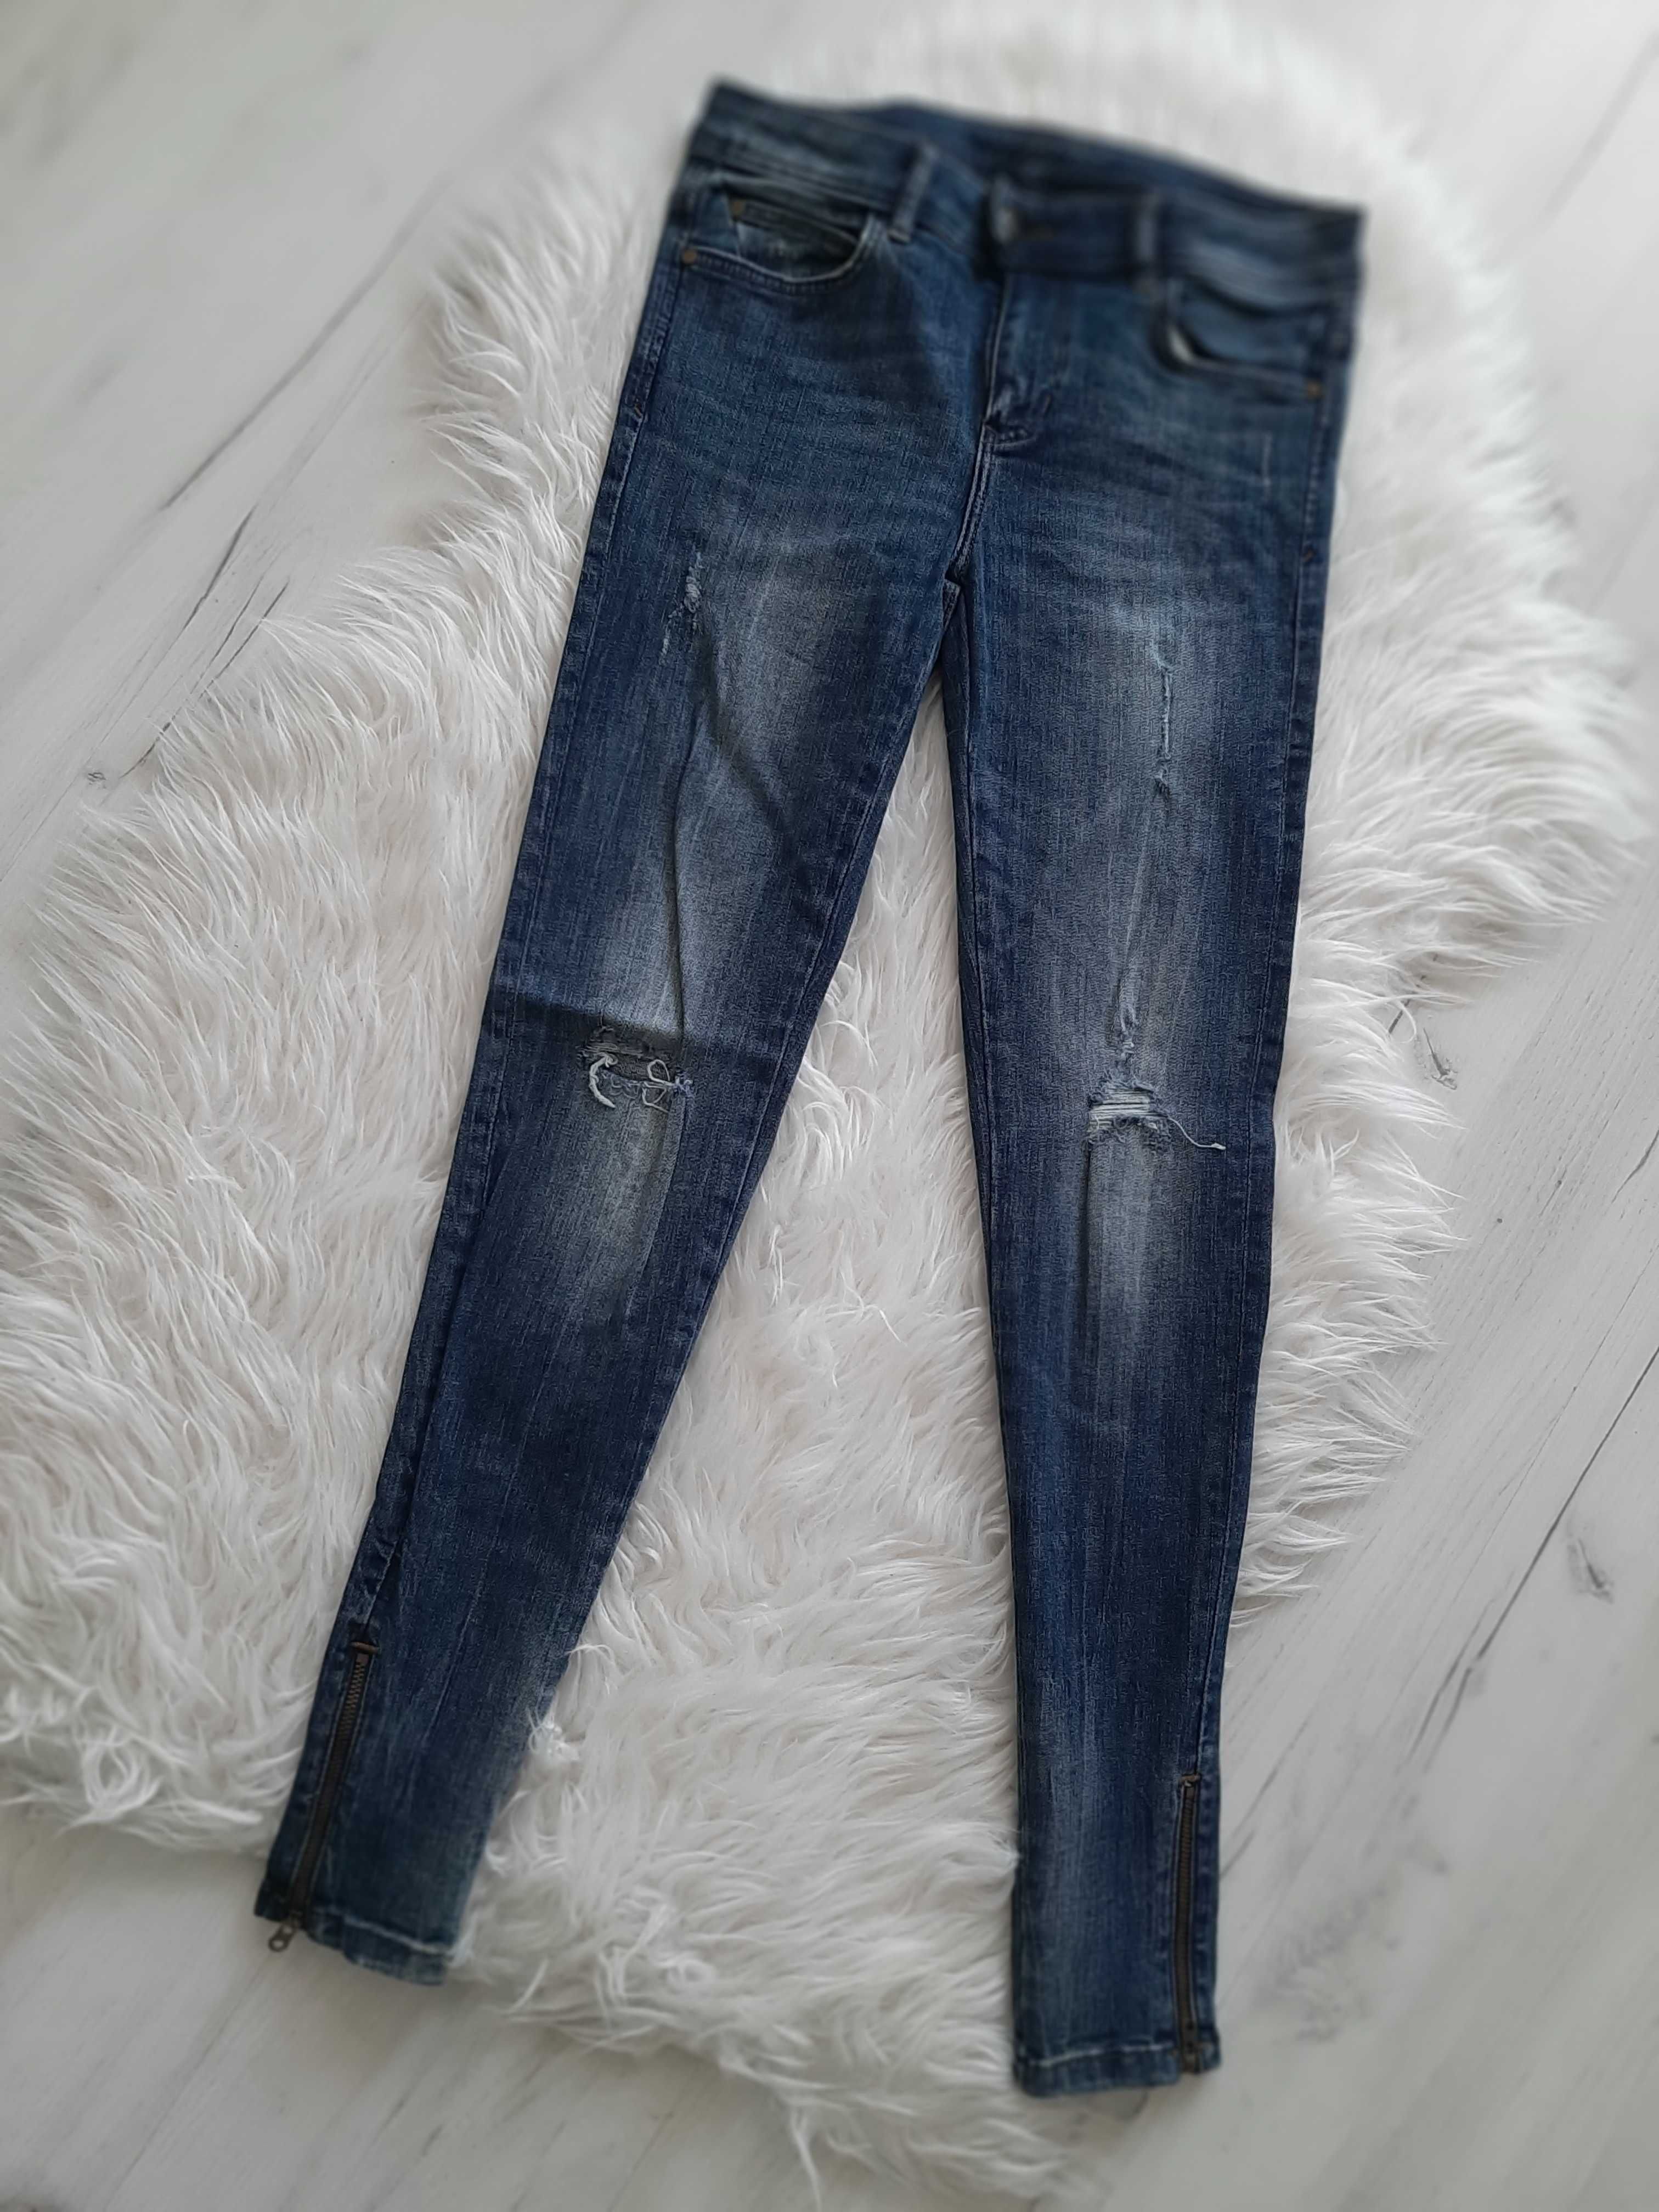 ZARA piękne jeansy rurki z zameczkami XS 34